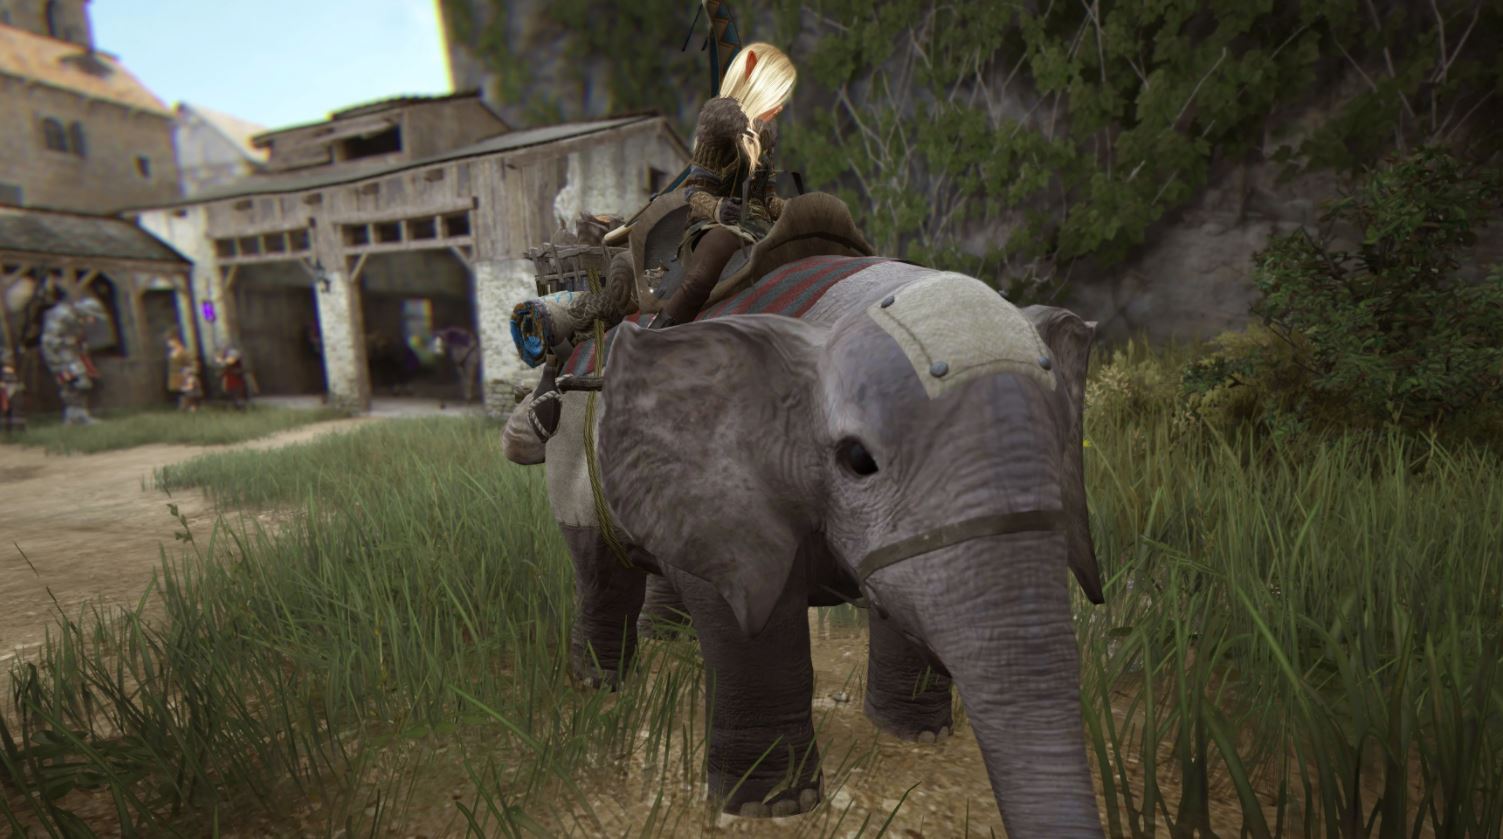 bdo guide how to get mini elephant questline 2021